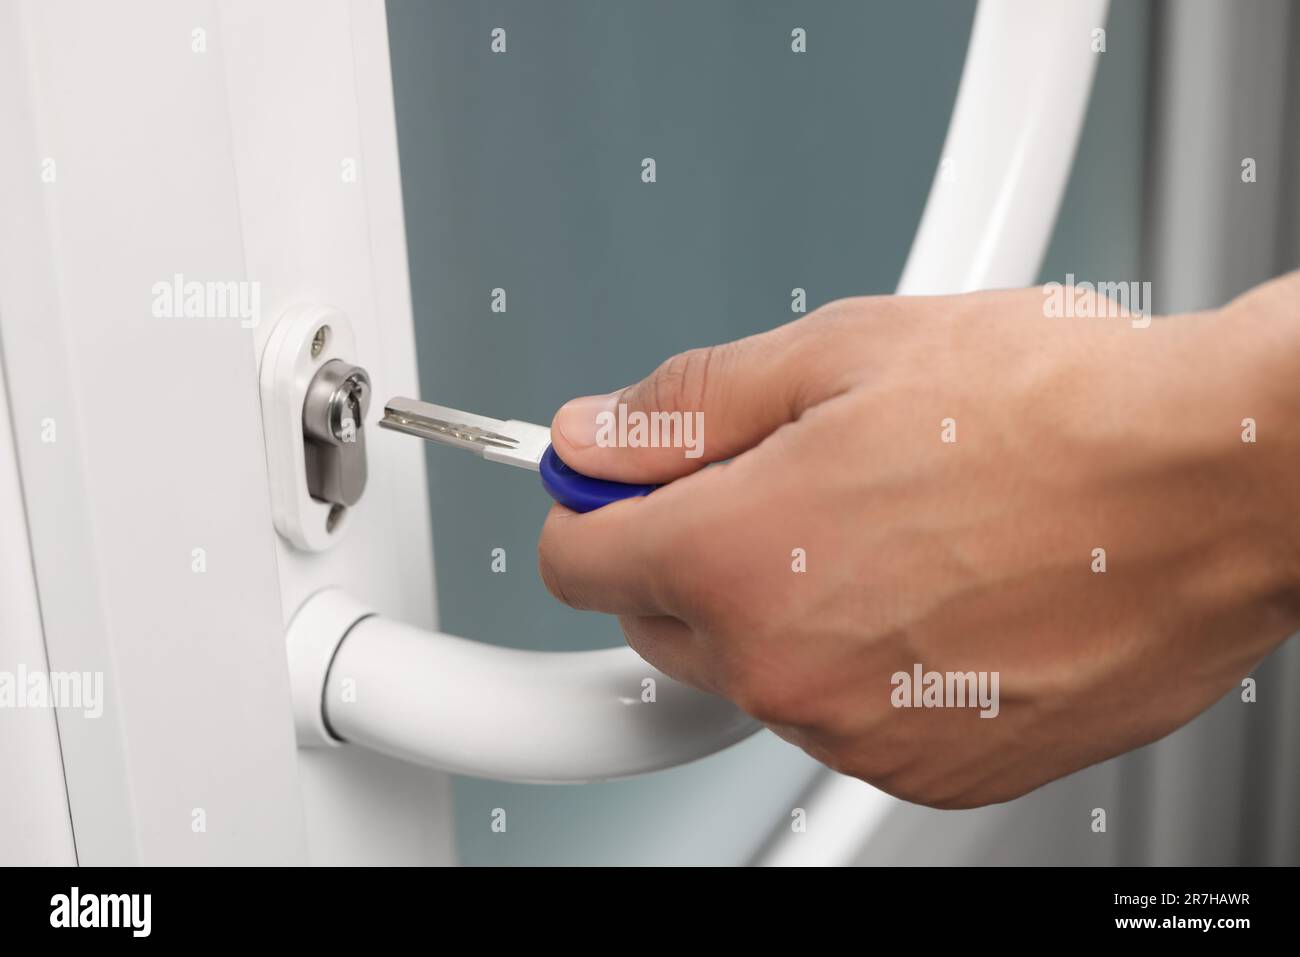 Man unlocking door with key, closeup view Stock Photo